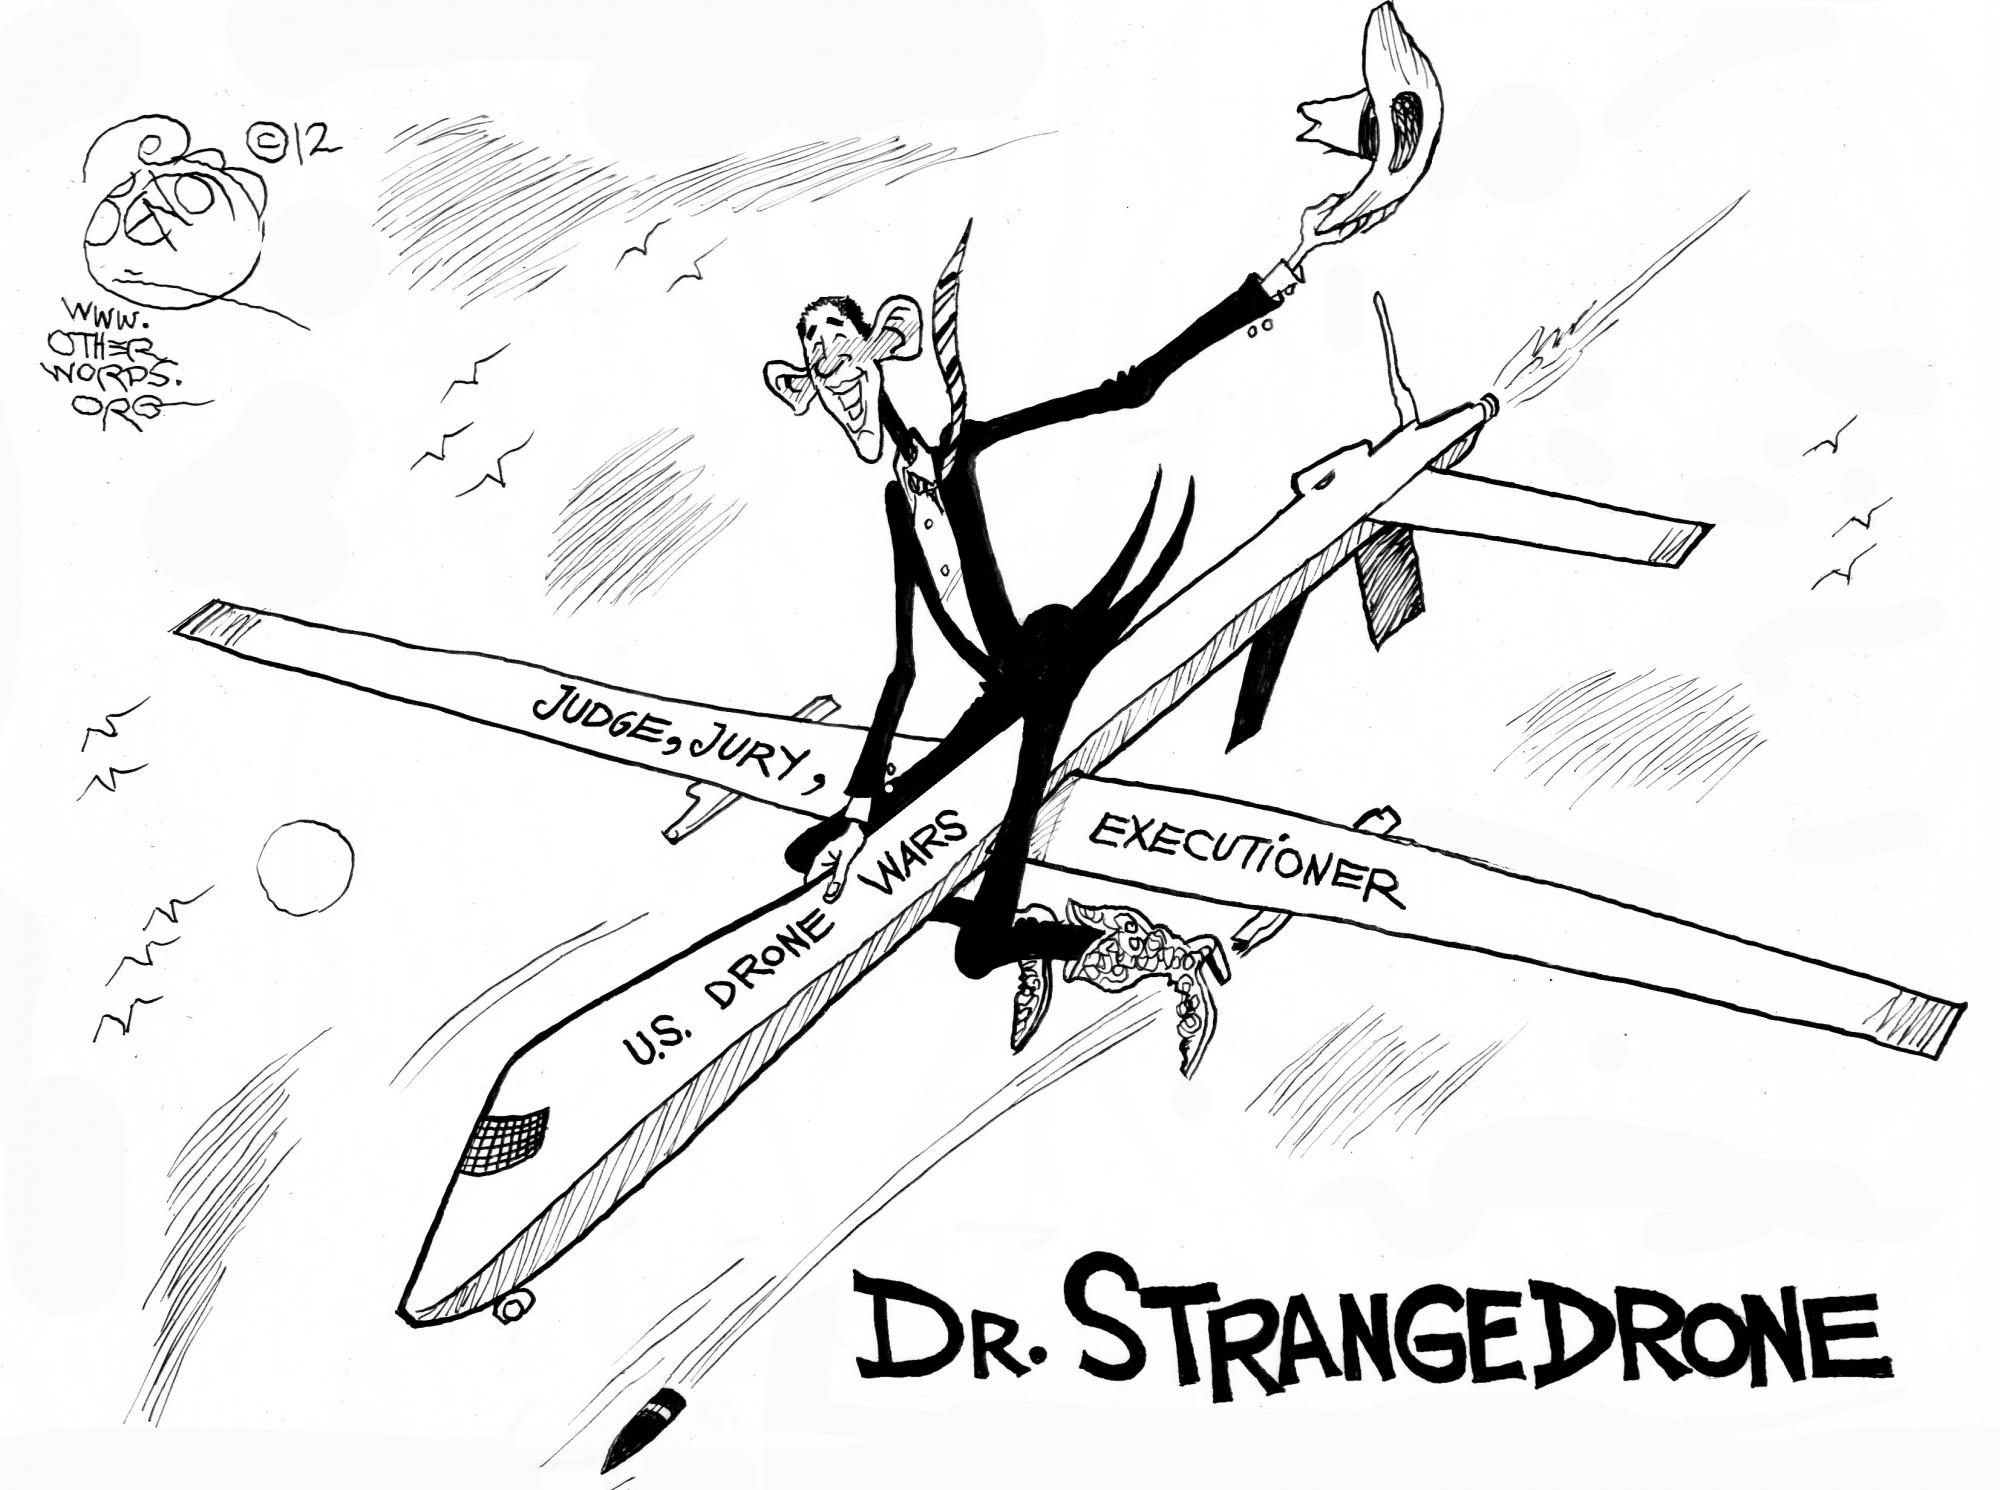 Dr. Strangedrone